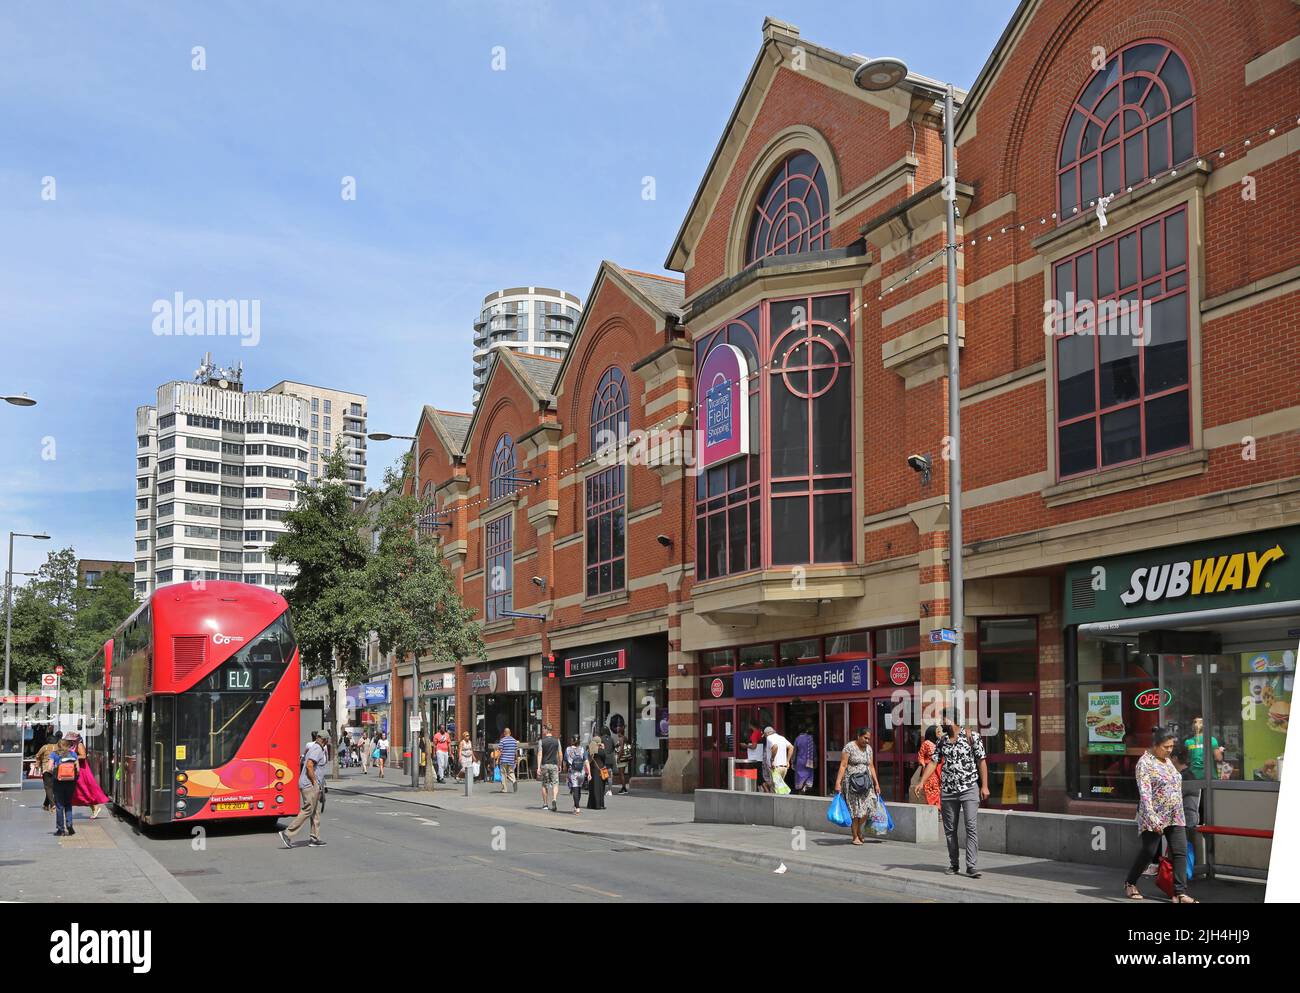 Barking Town Center, Londra, Regno Unito. Ripple Road, mostra il centro commerciale Vicarage Field (a destra). Ambiente di strada trafficato. Giorno d'estate. Foto Stock